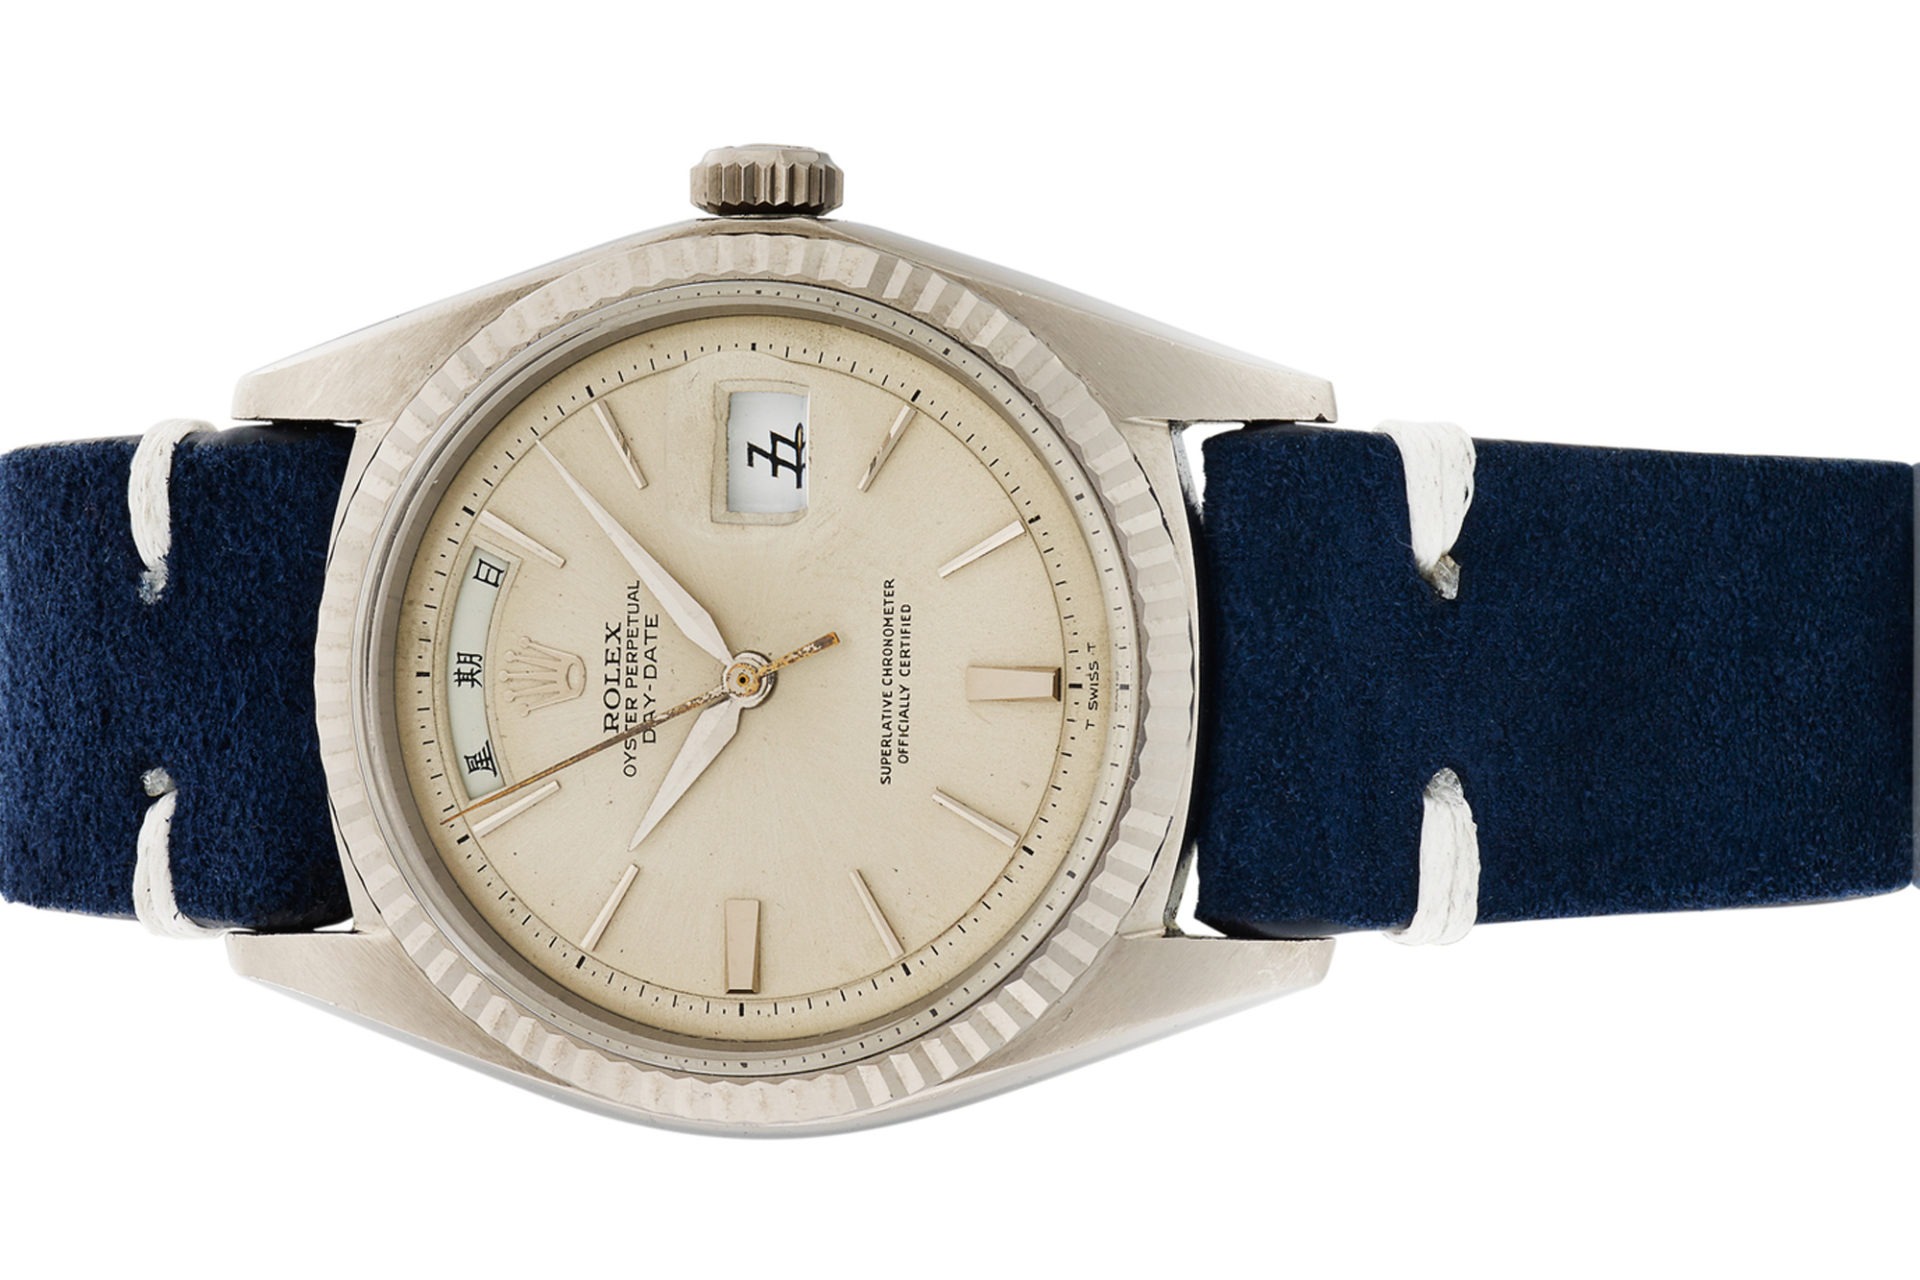 Antiquorum - Vente d'importantes montres récentes et de collection du 10 mai - Rolex Day-Date Calendrier Chinois